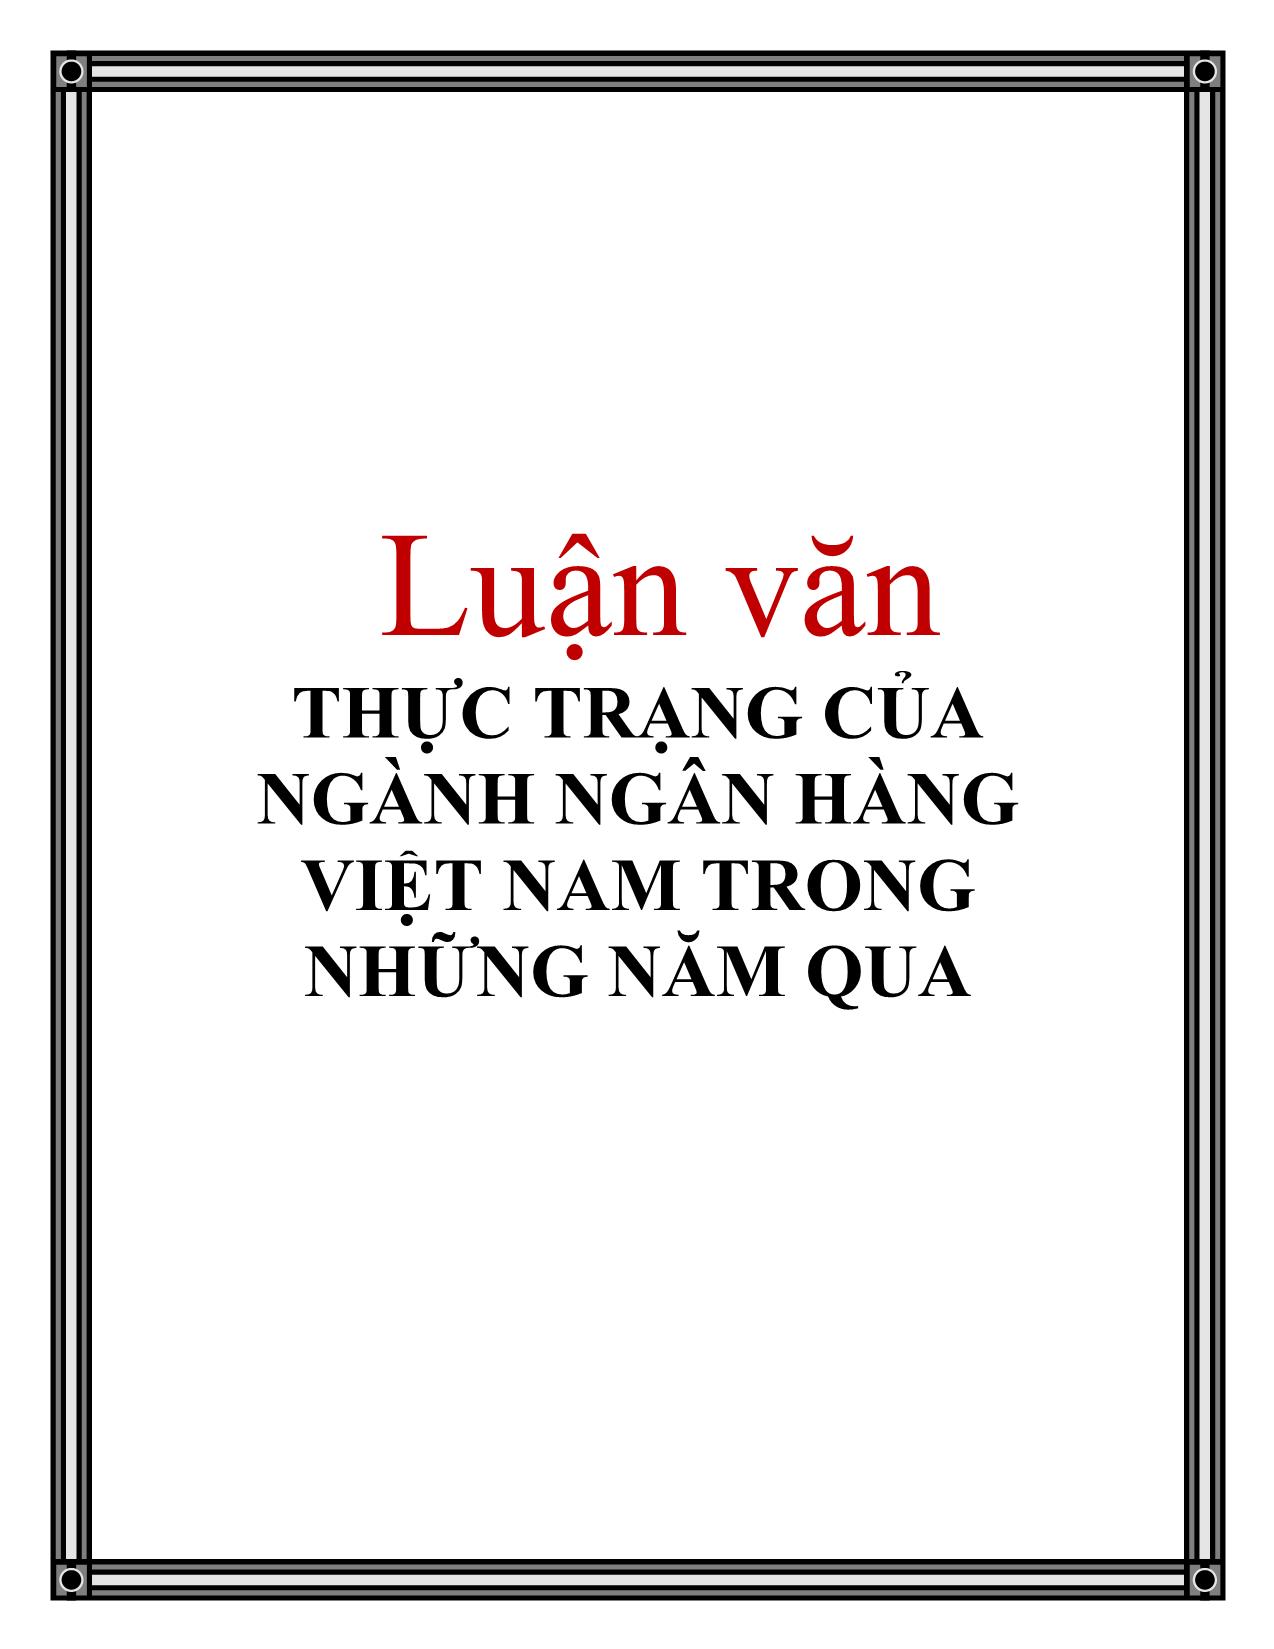 Luận văn Thực trạng của ngành ngân hàng Việt Nam trong những năm qua trang 1